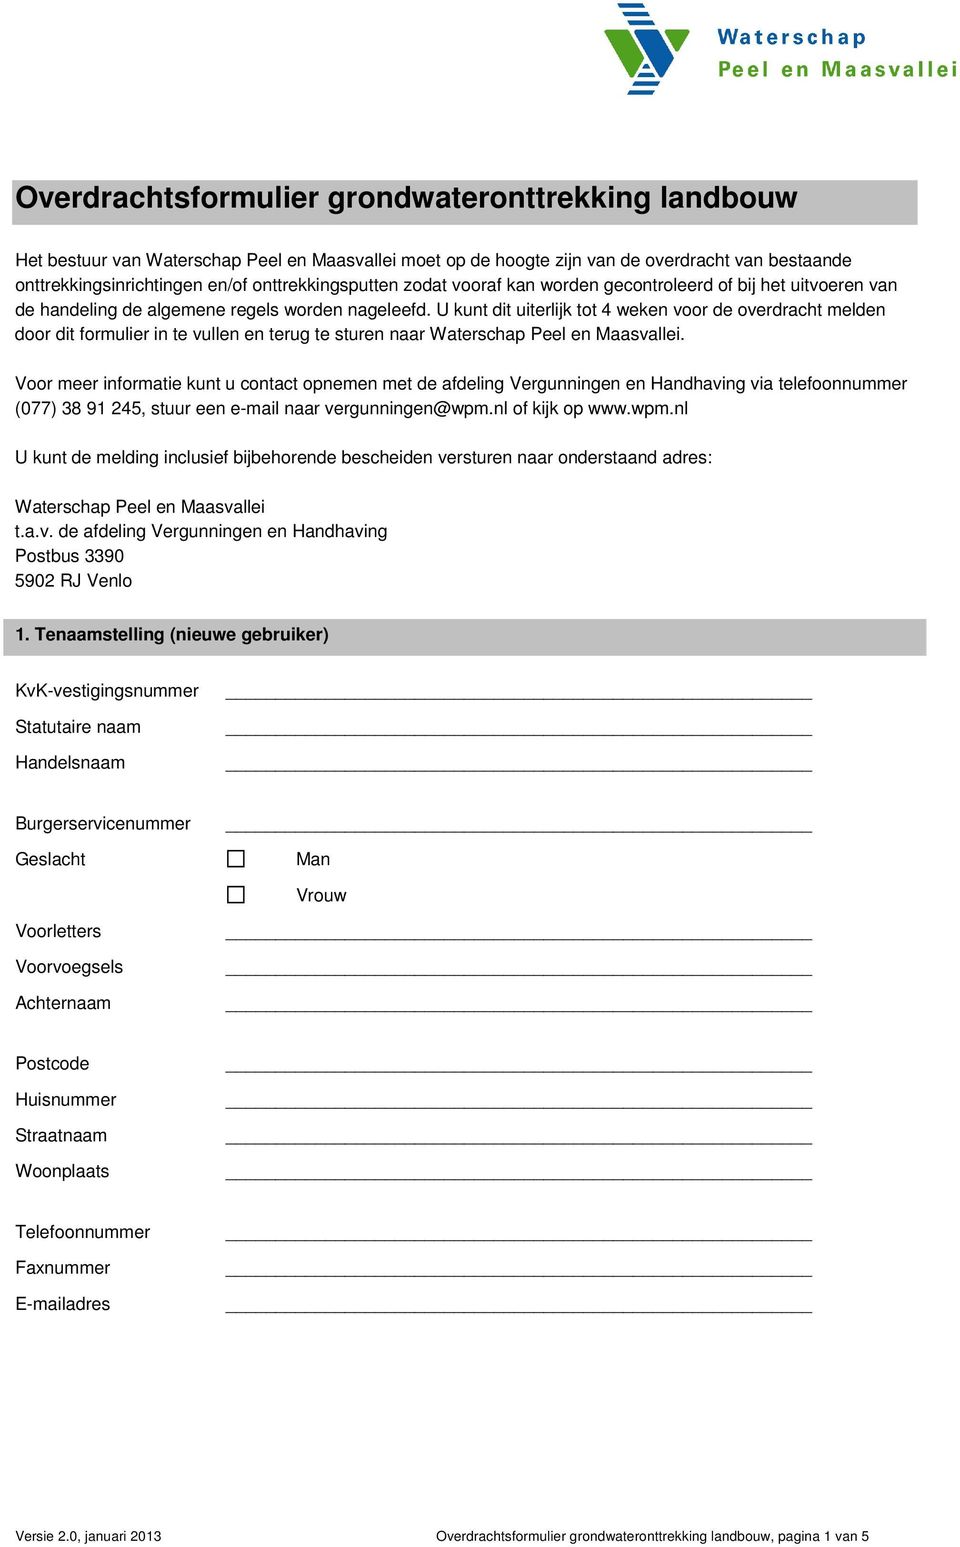 U kunt dit uiterlijk tot 4 weken voor de overdracht melden door dit formulier in te vullen en terug te sturen naar Waterschap Peel en Maasvallei.